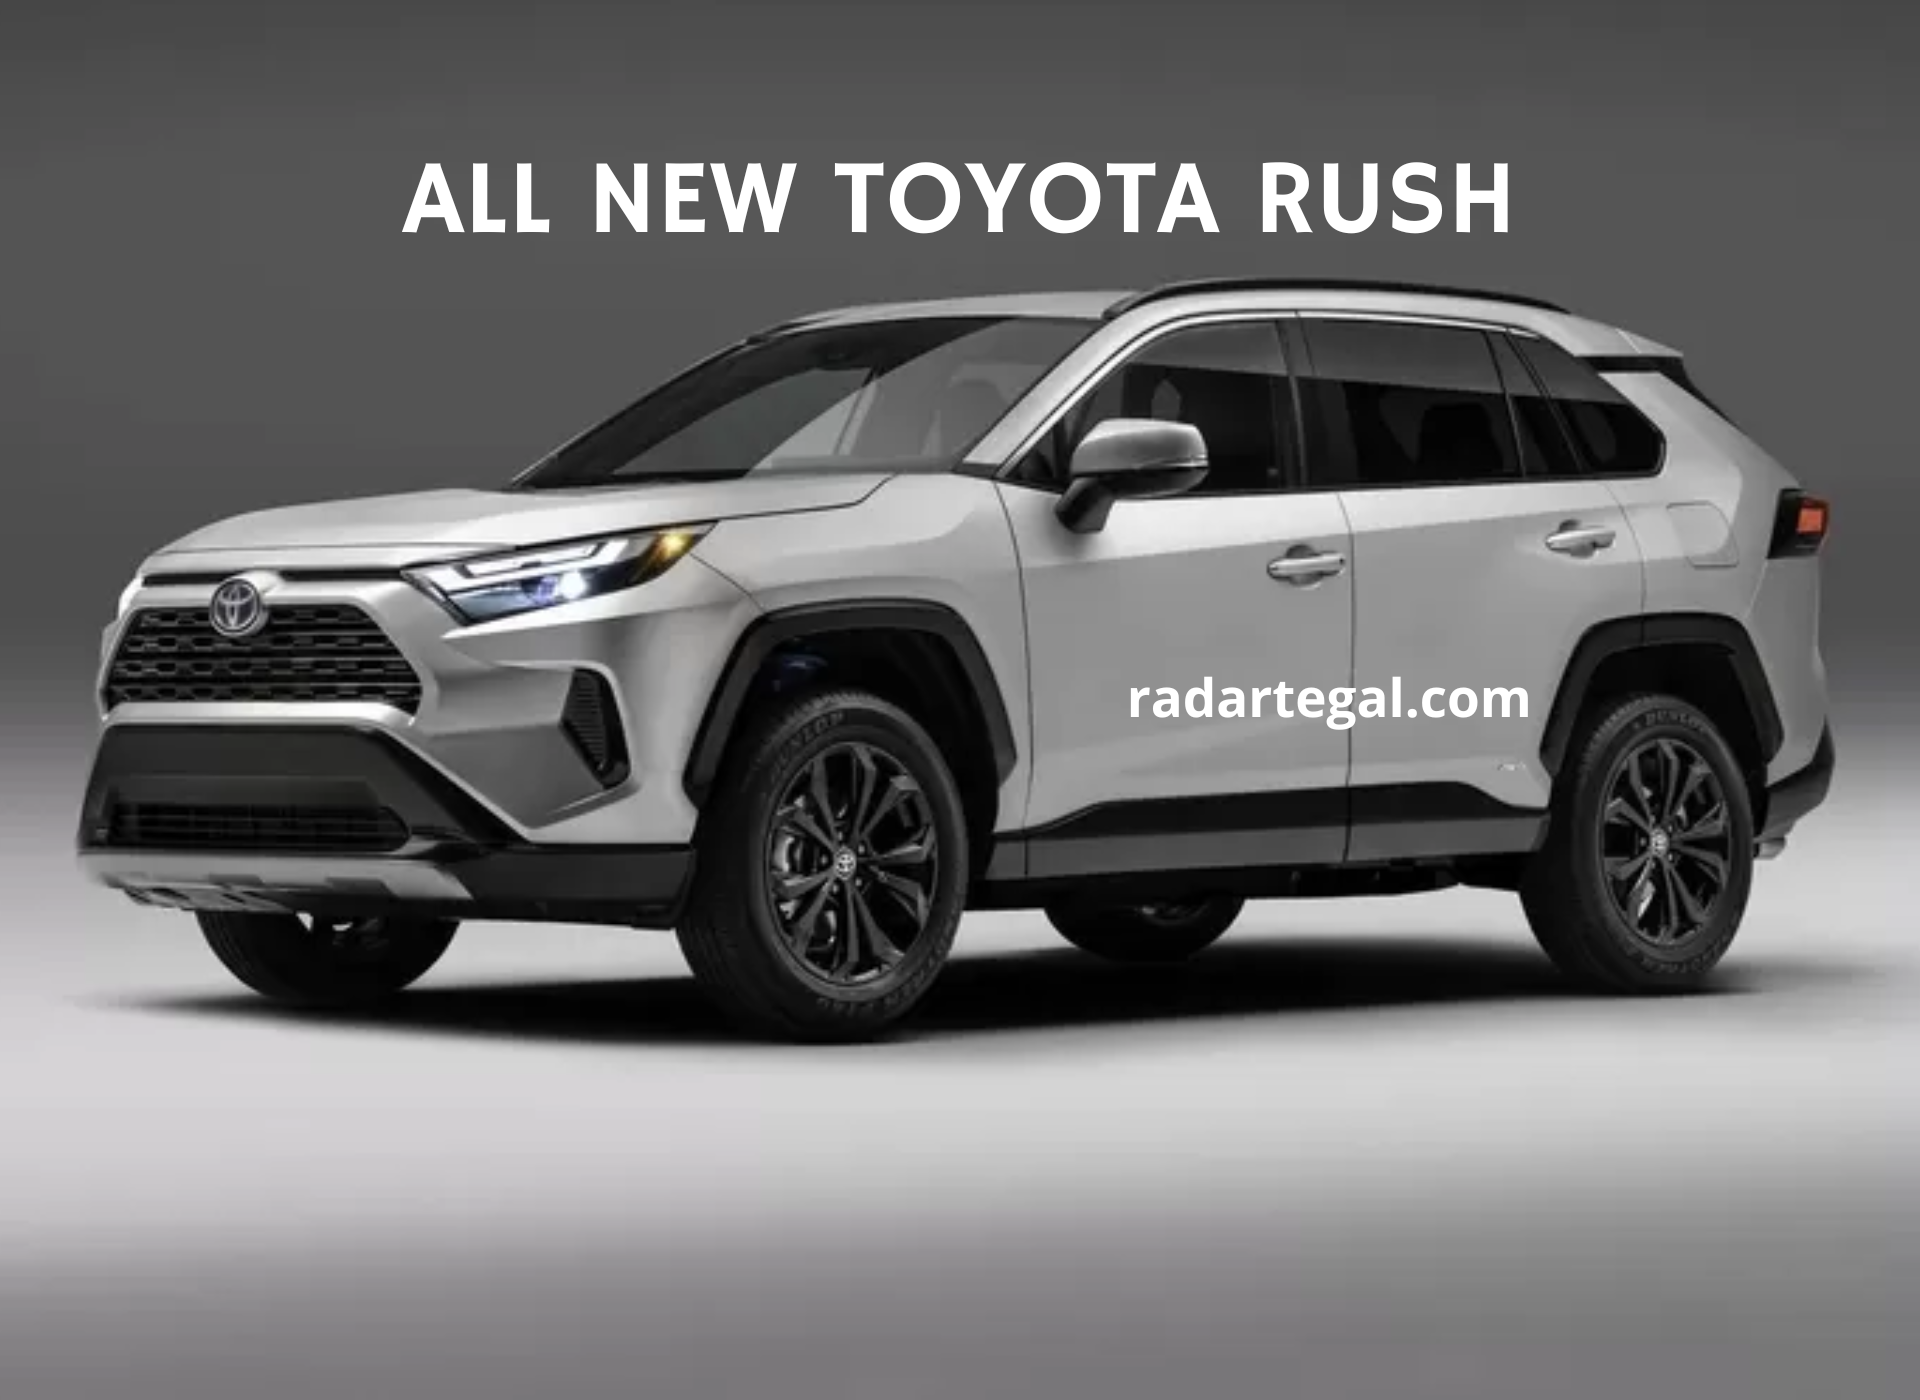 All New Toyota Rush Generasi ke-3 Hybrid Terbaru, Ini Cara Kerjanya!